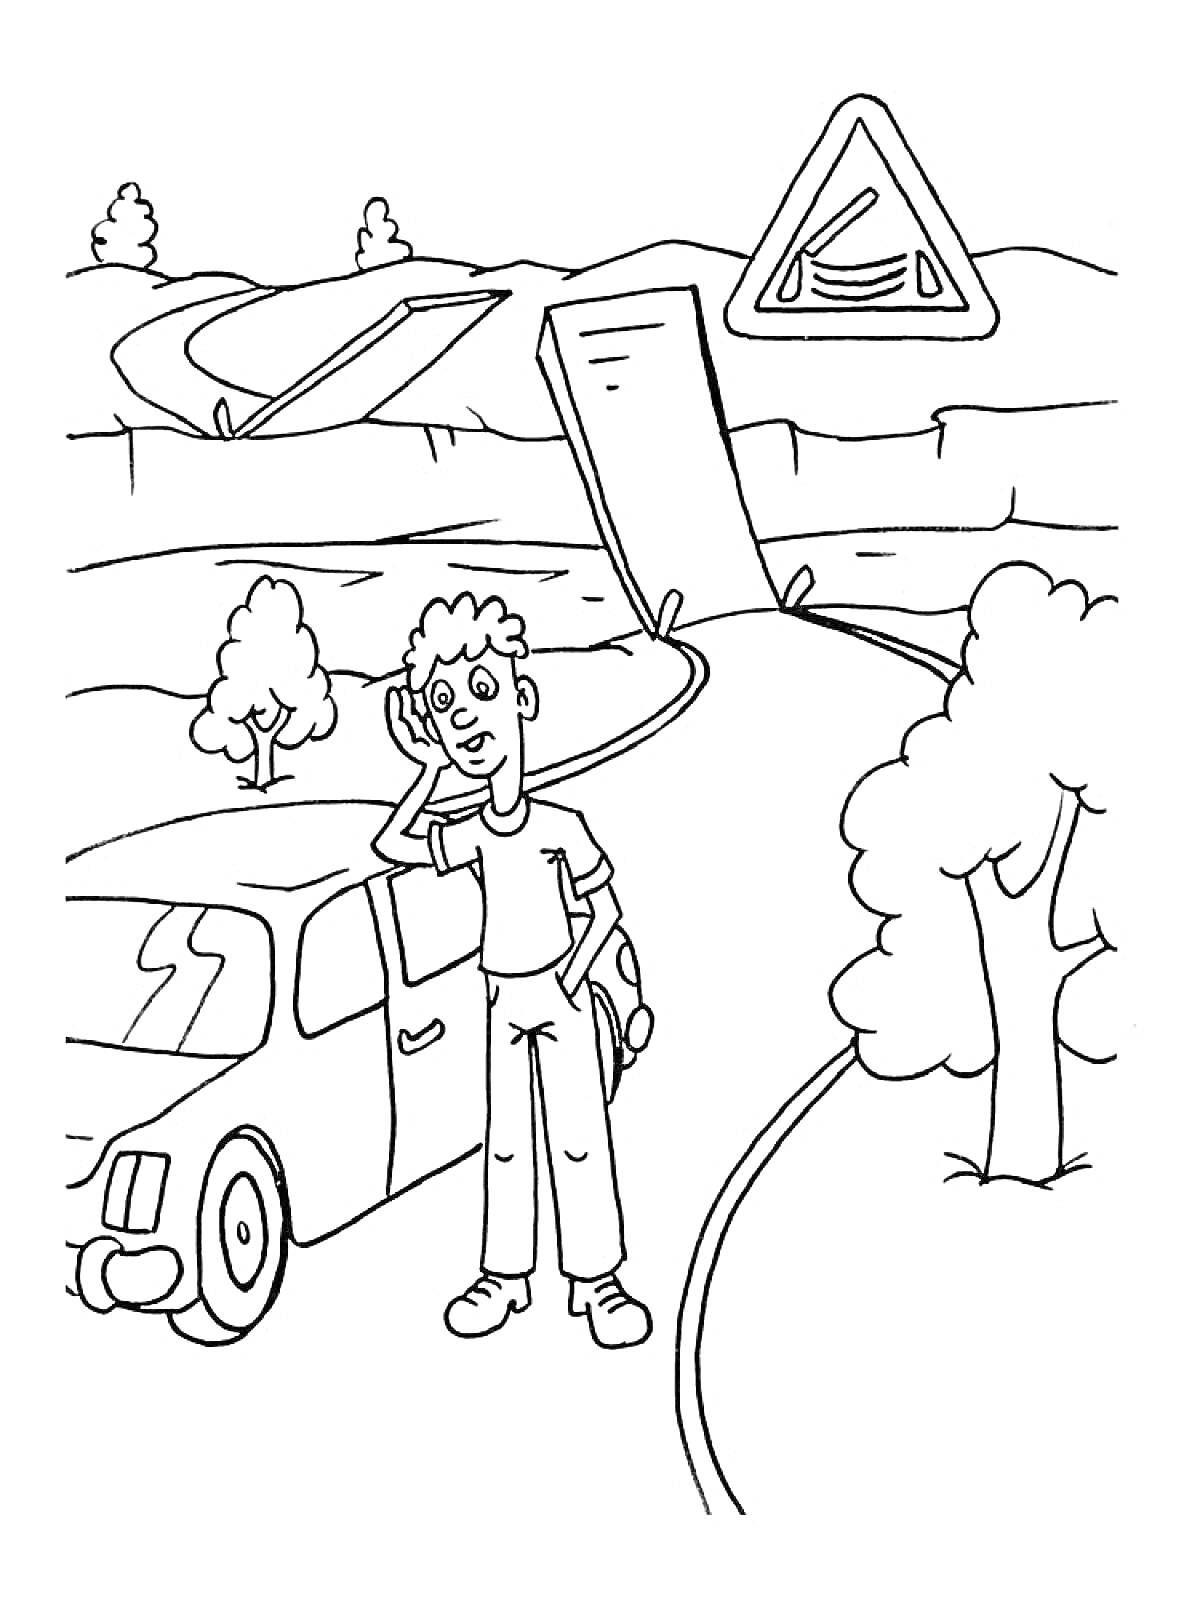 Мужчина возле легкового автомобиля у дорожного знака вблизи опасного поворота